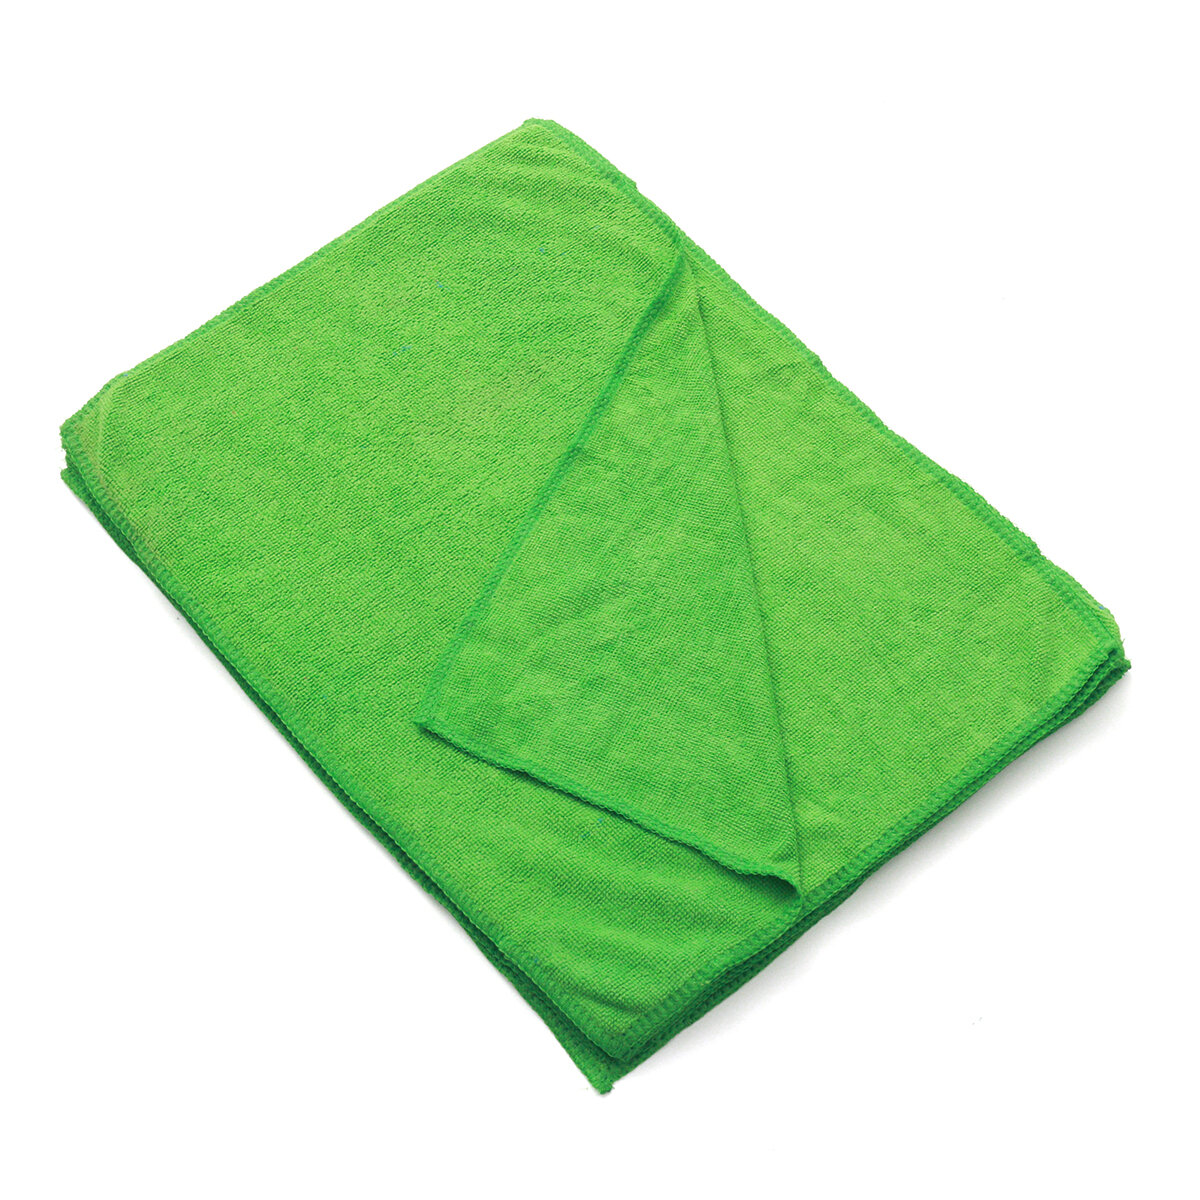 

10шт Авто мытье Soft чистящие салфетки из микрофибры зеленые чистые салфетки 30x40см